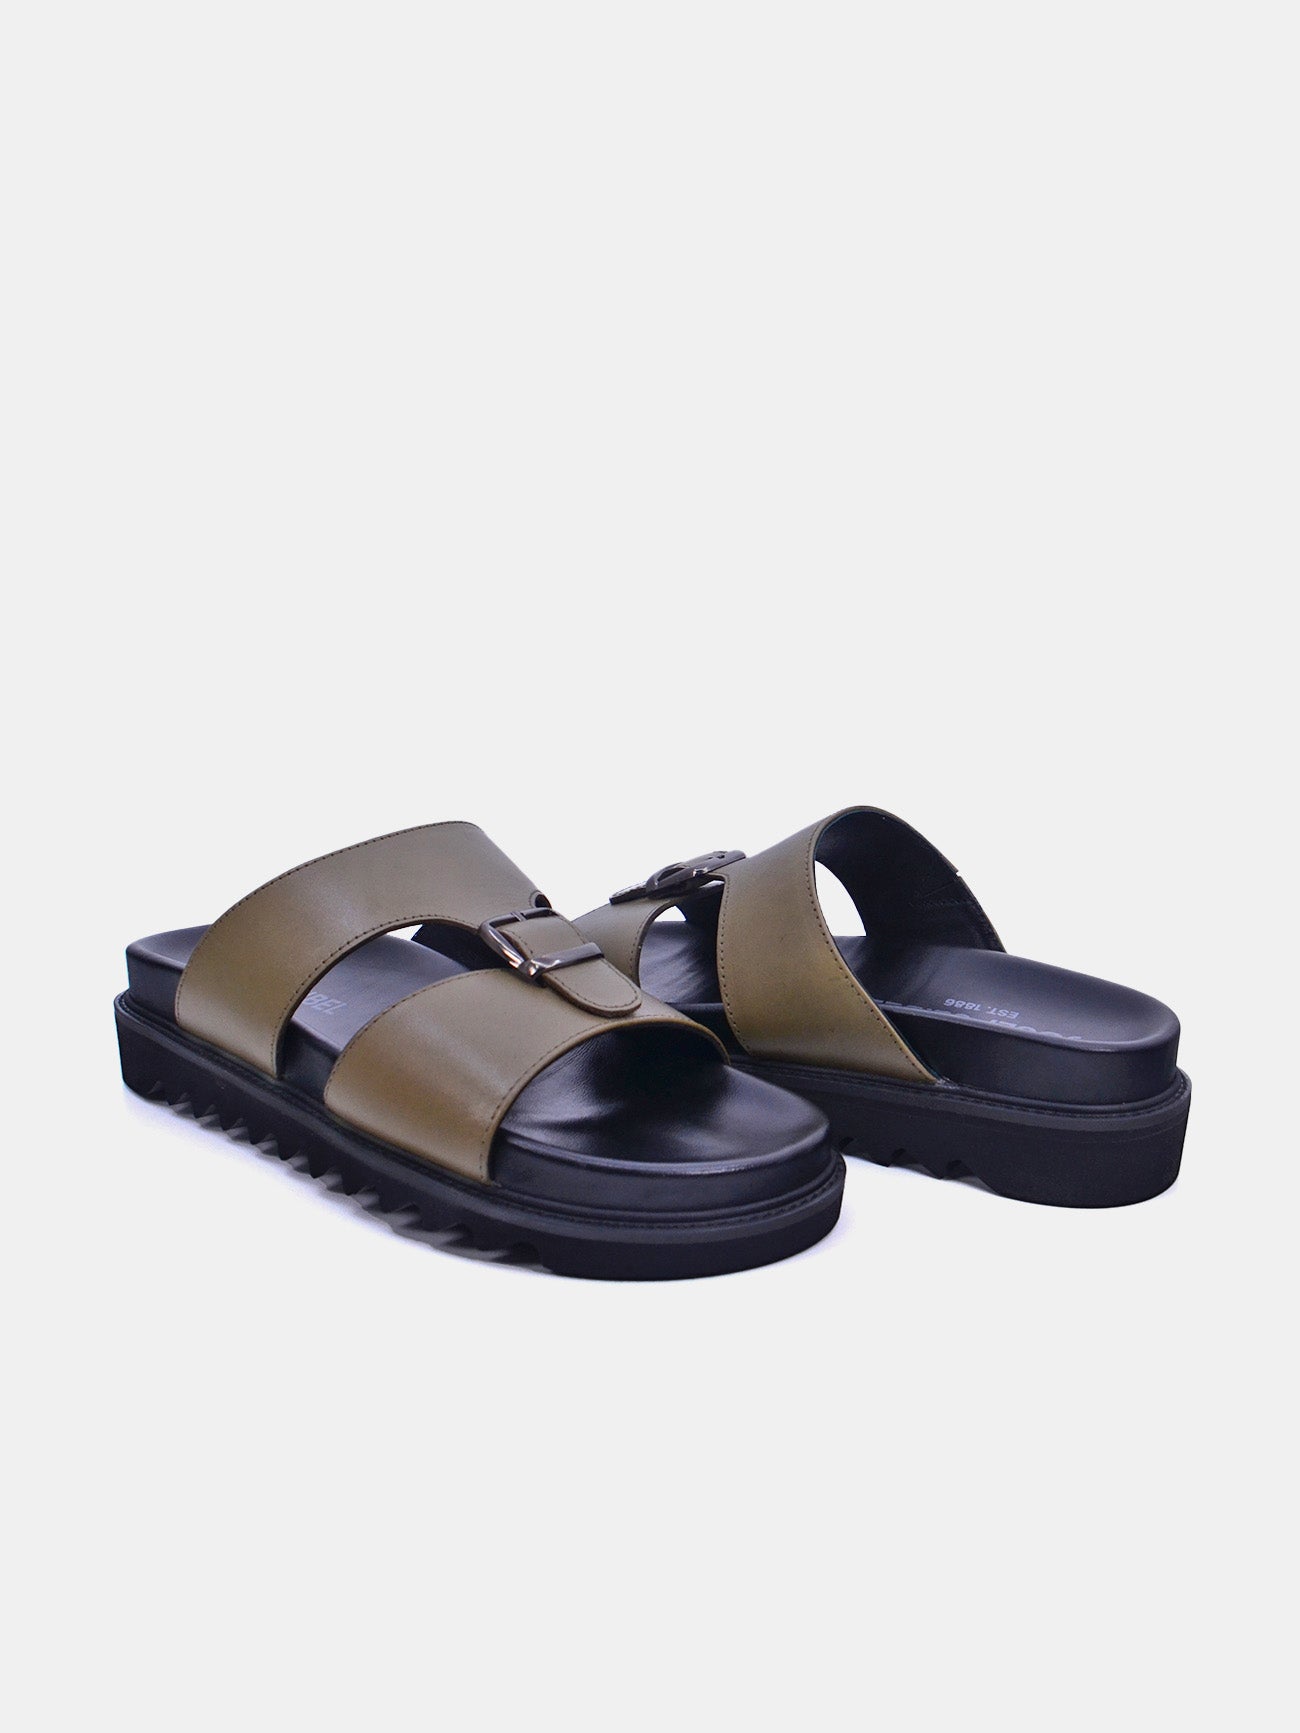 Josef Seibel 58403 Men's Casual Sandals #color_Beige